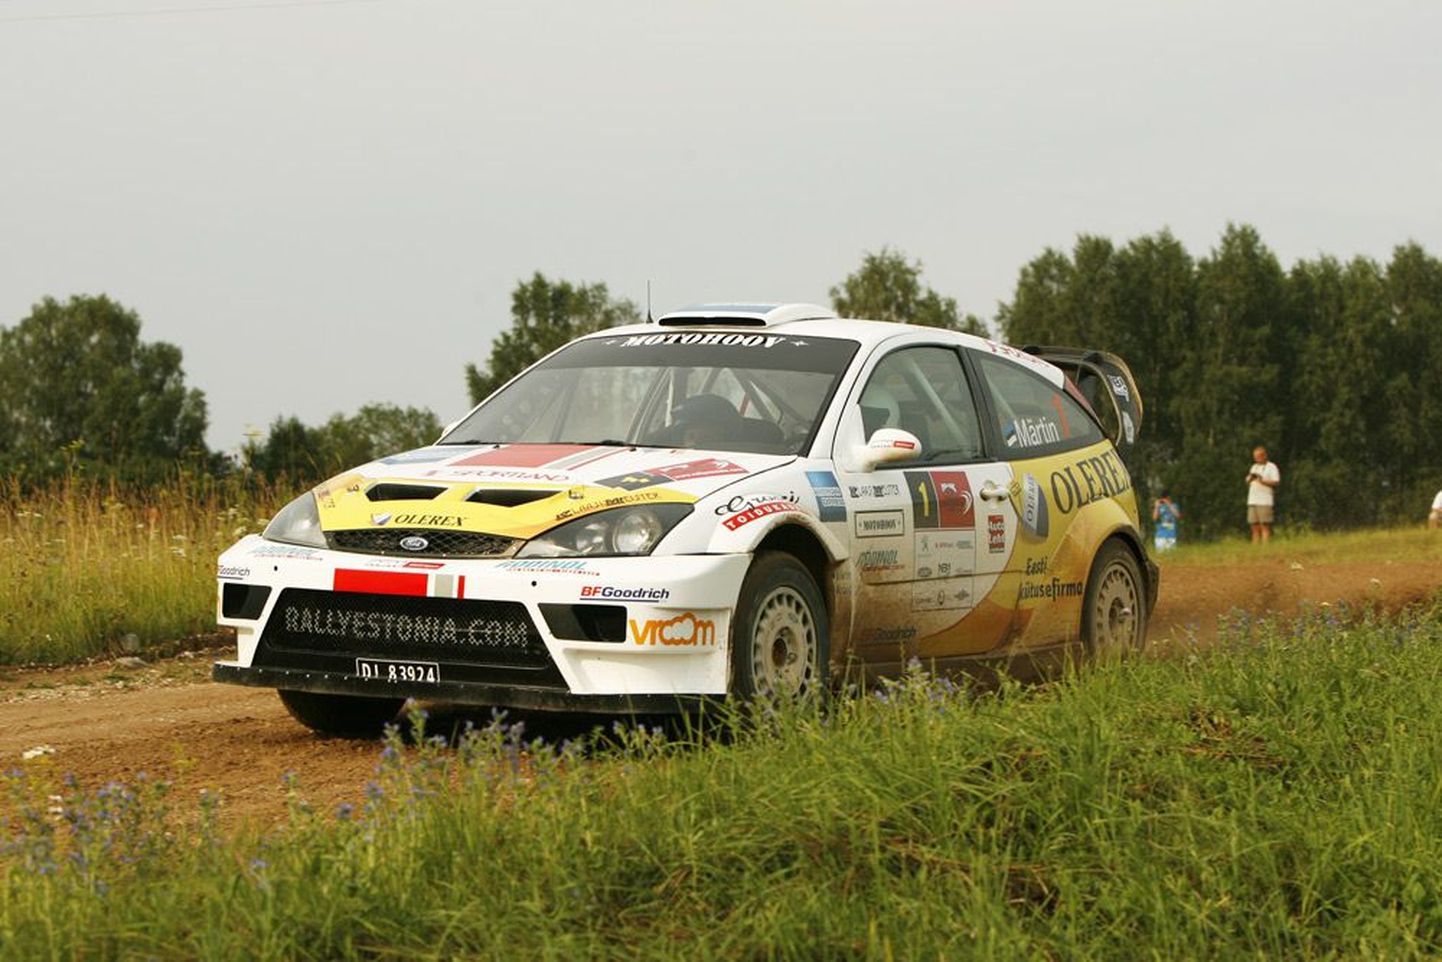 Автогонщик Маркко Мяртин участвовал в Rally Estonial ровно год назад. В этом году он снова выйдет на старт.